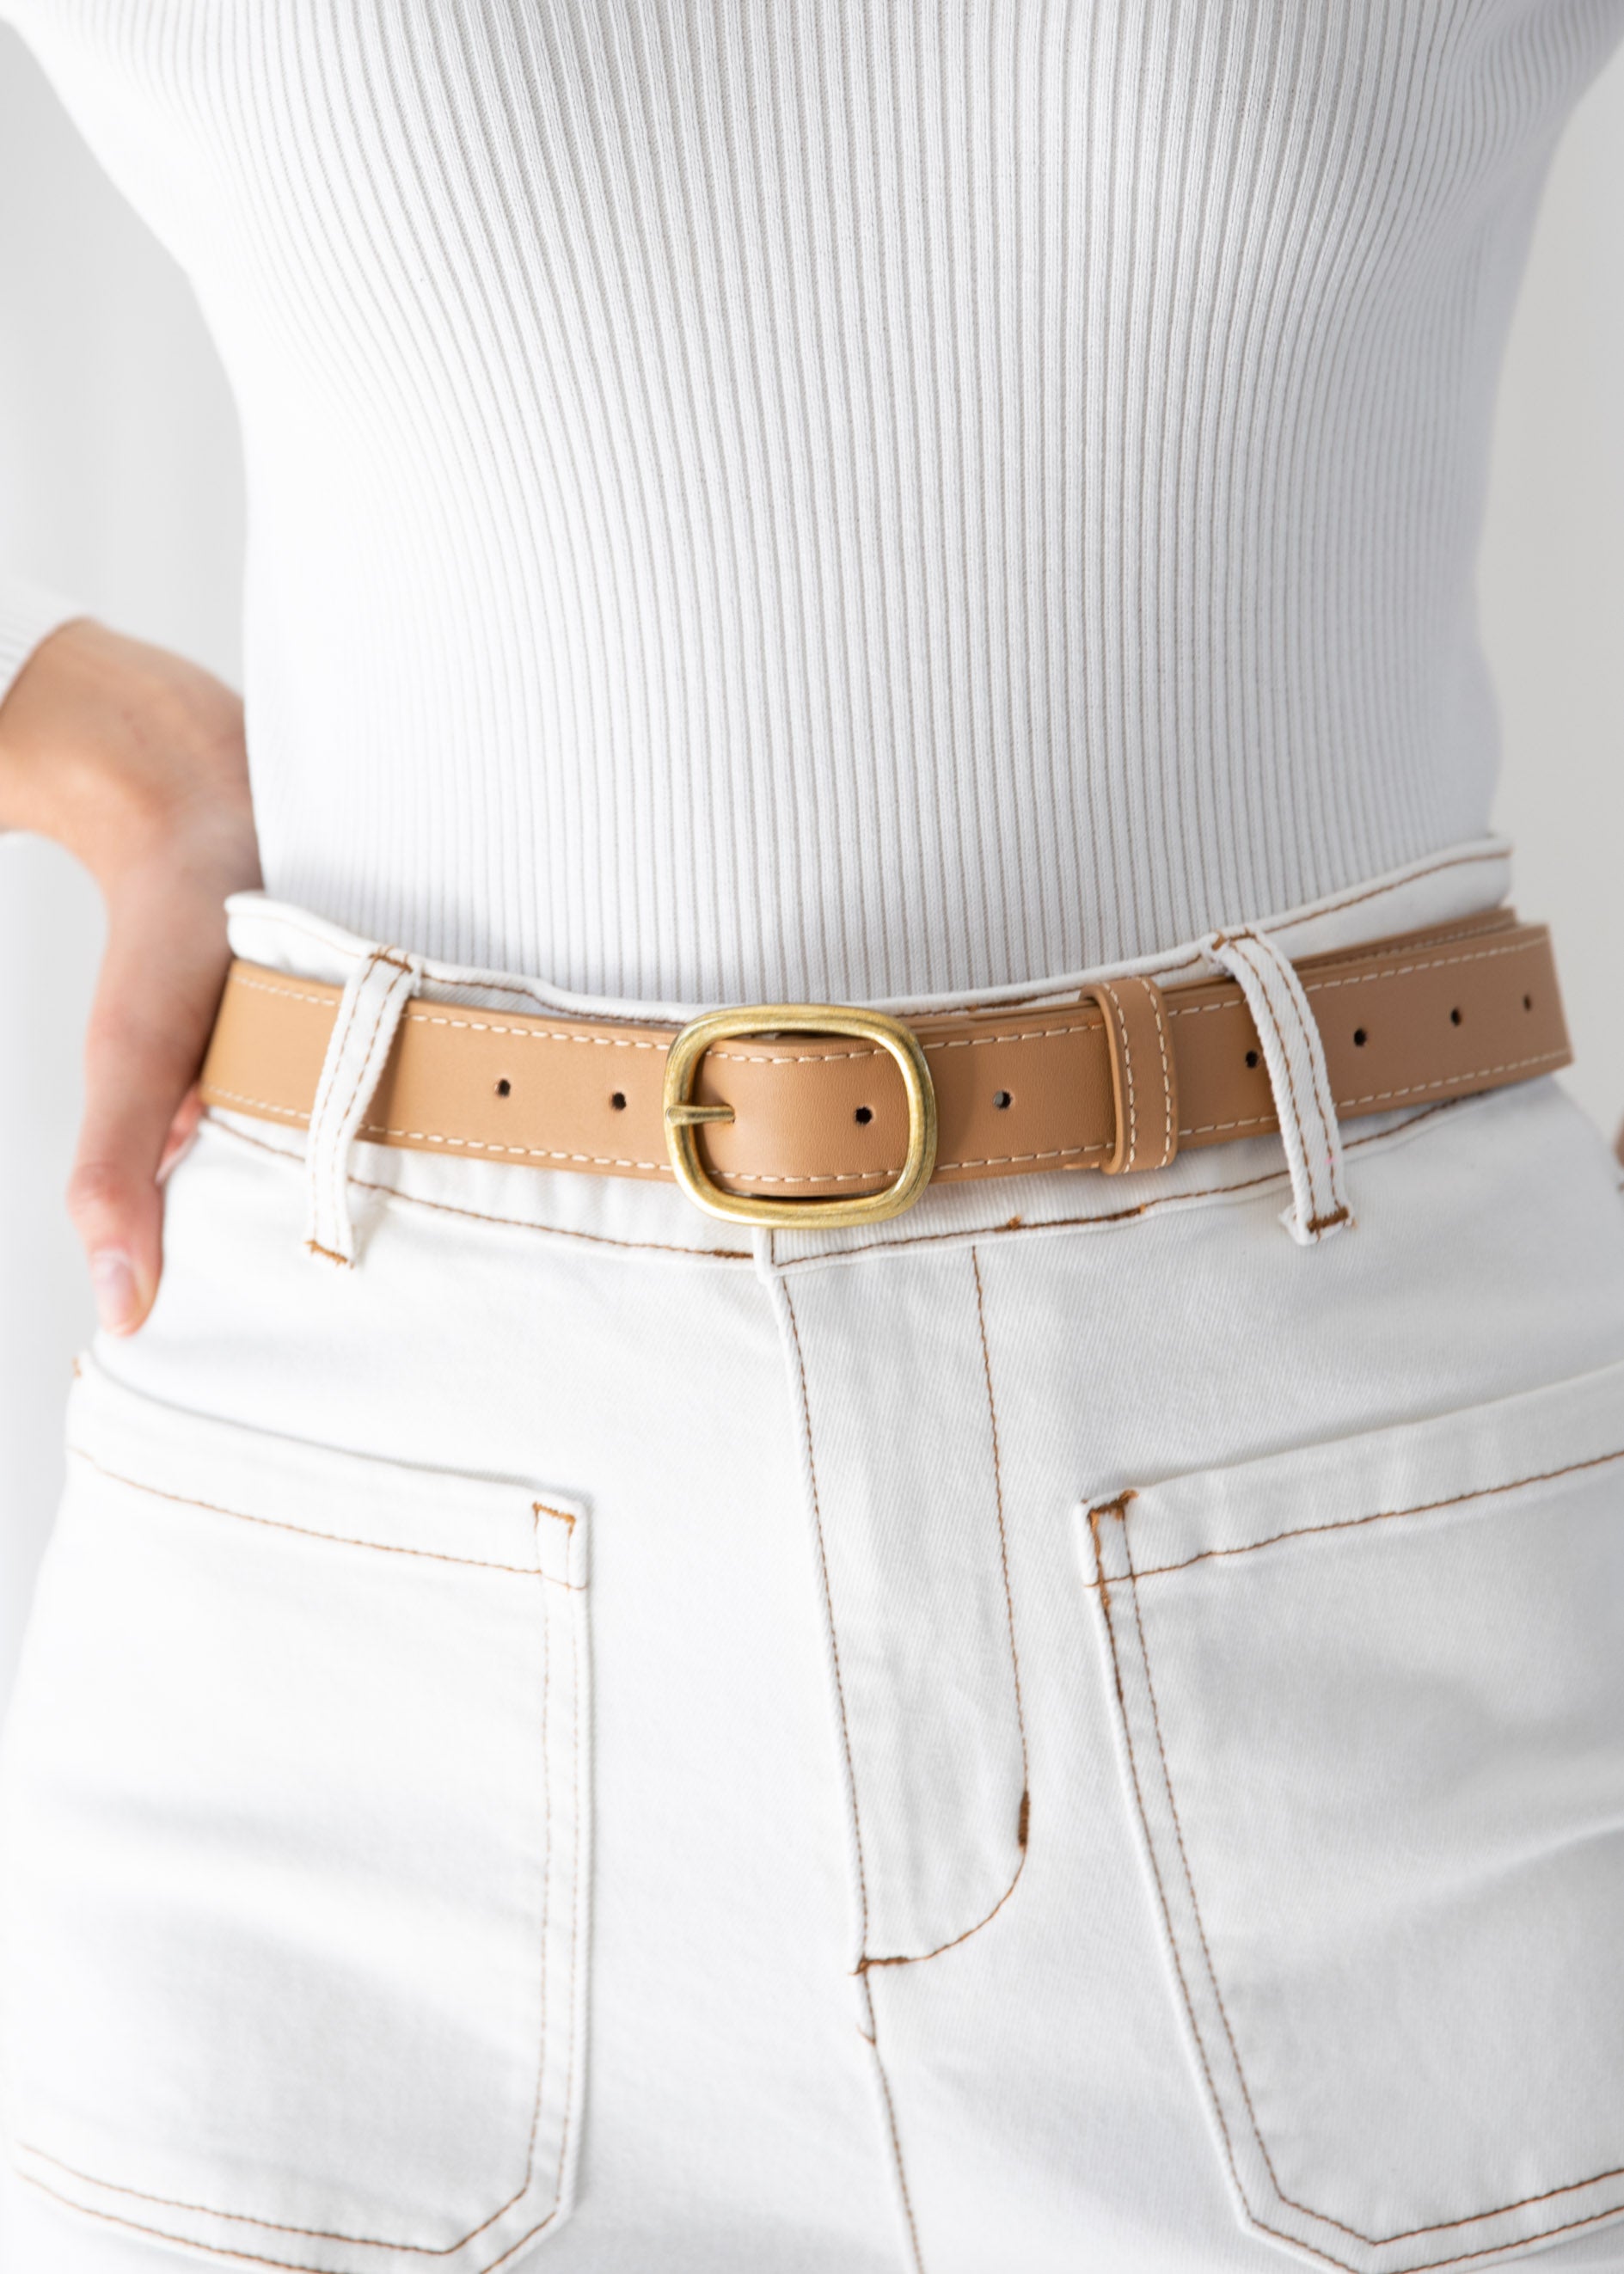 Kodey Leather Look Belt - Beige